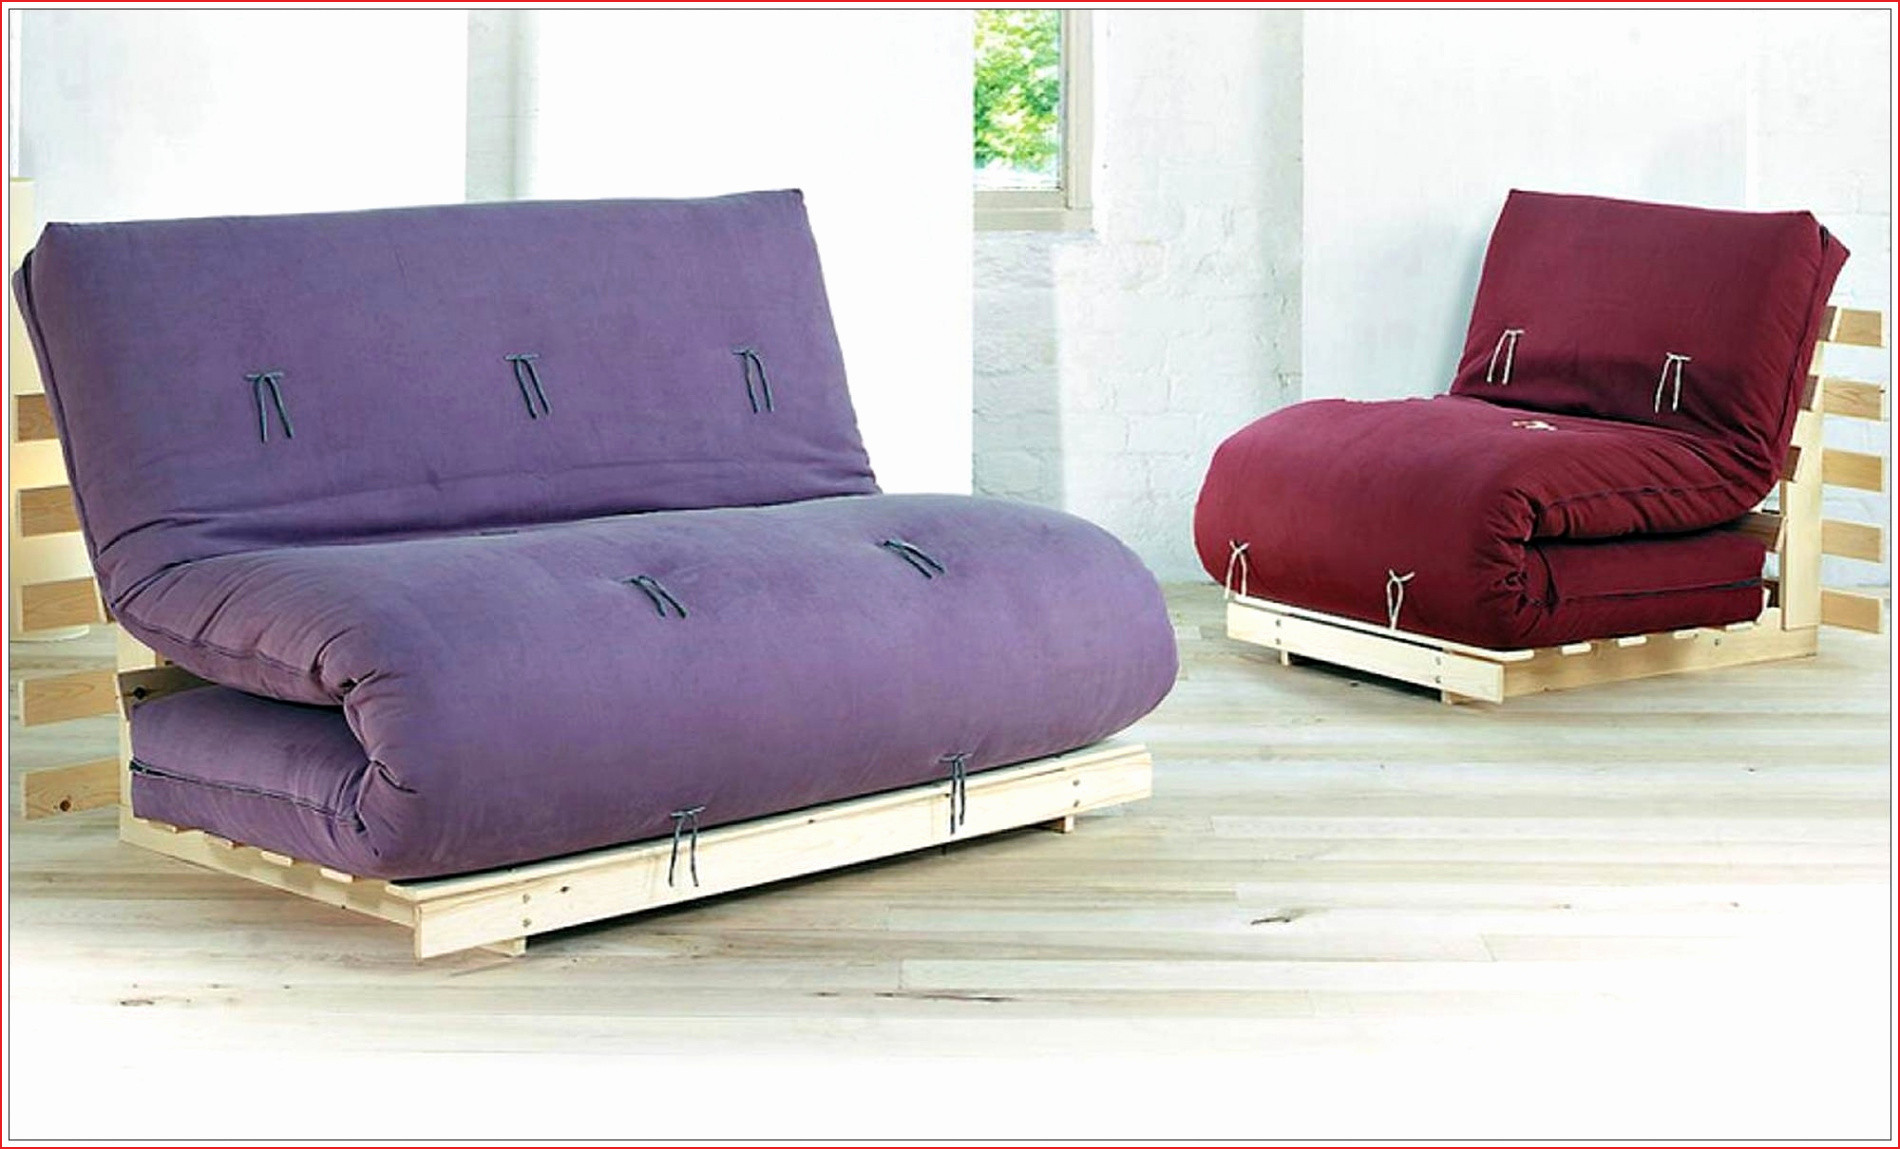 fauteuil futon matelas futon japonais unique matelas banquette bz meilleur canape of fauteuil futon